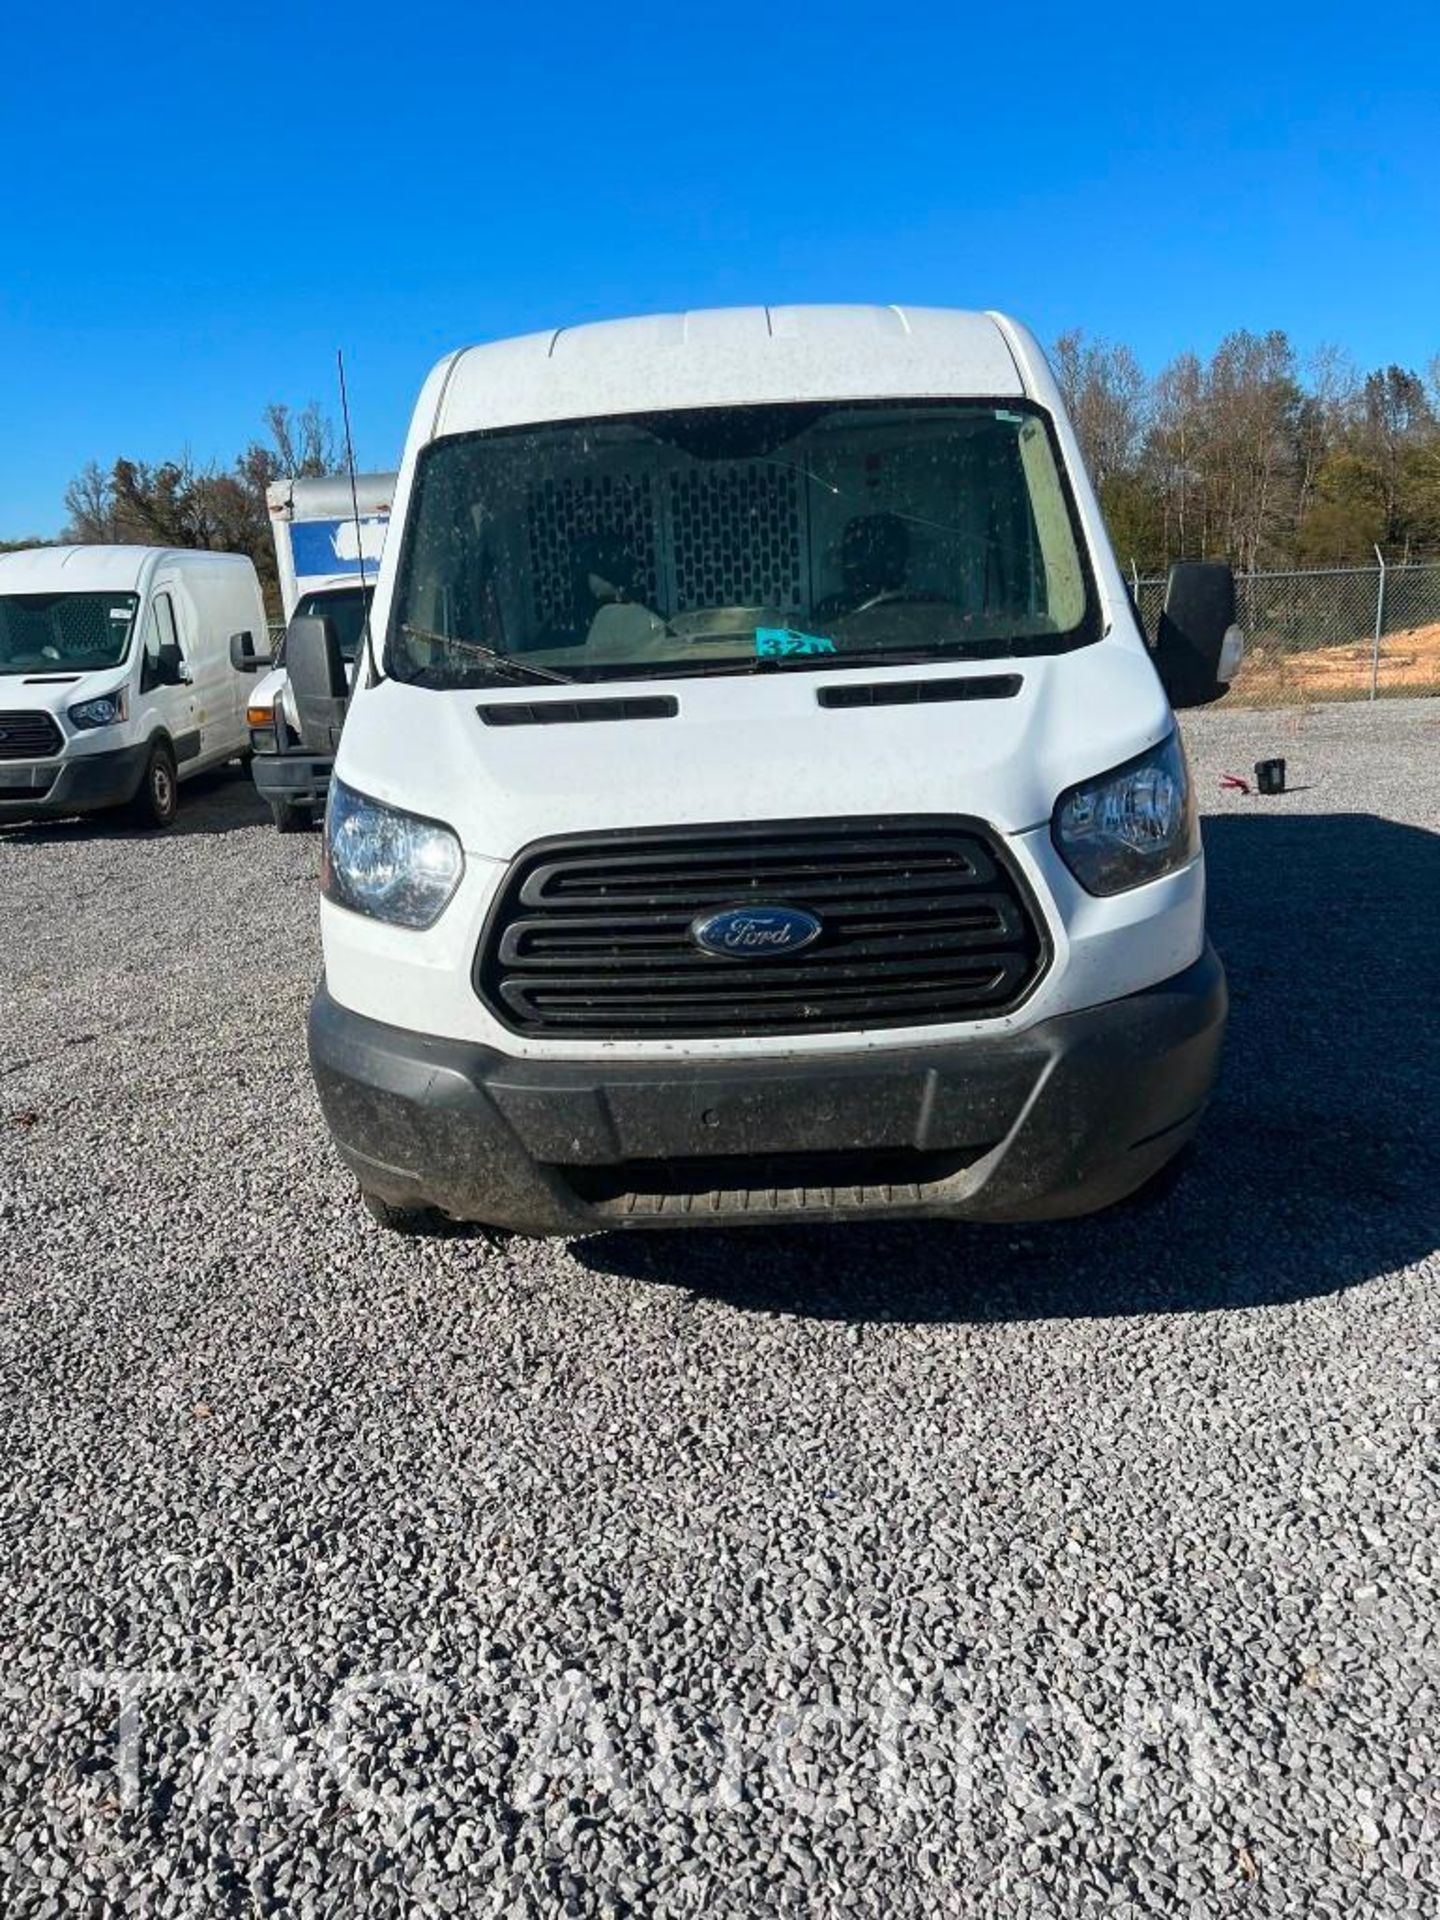 2019 Ford Transit 150 Cargo Van - Image 2 of 22